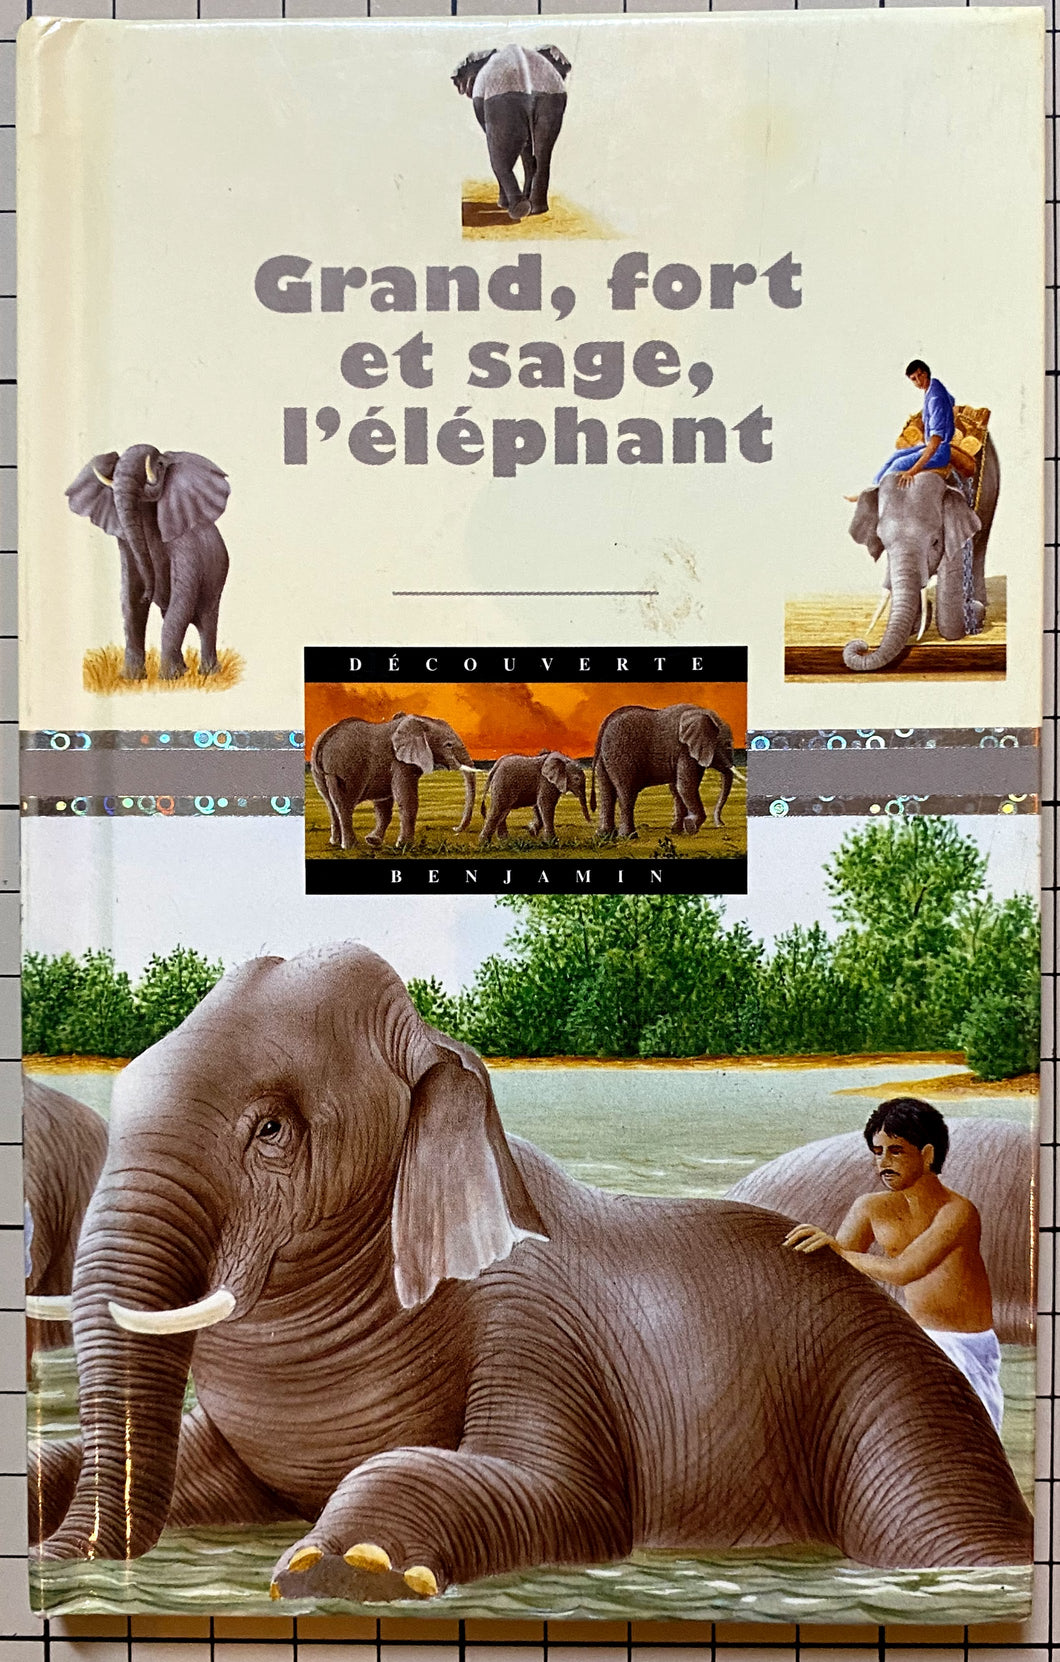 Grand, fort et sage, l'éléphant : Pierre Pfeffer, René Mettler